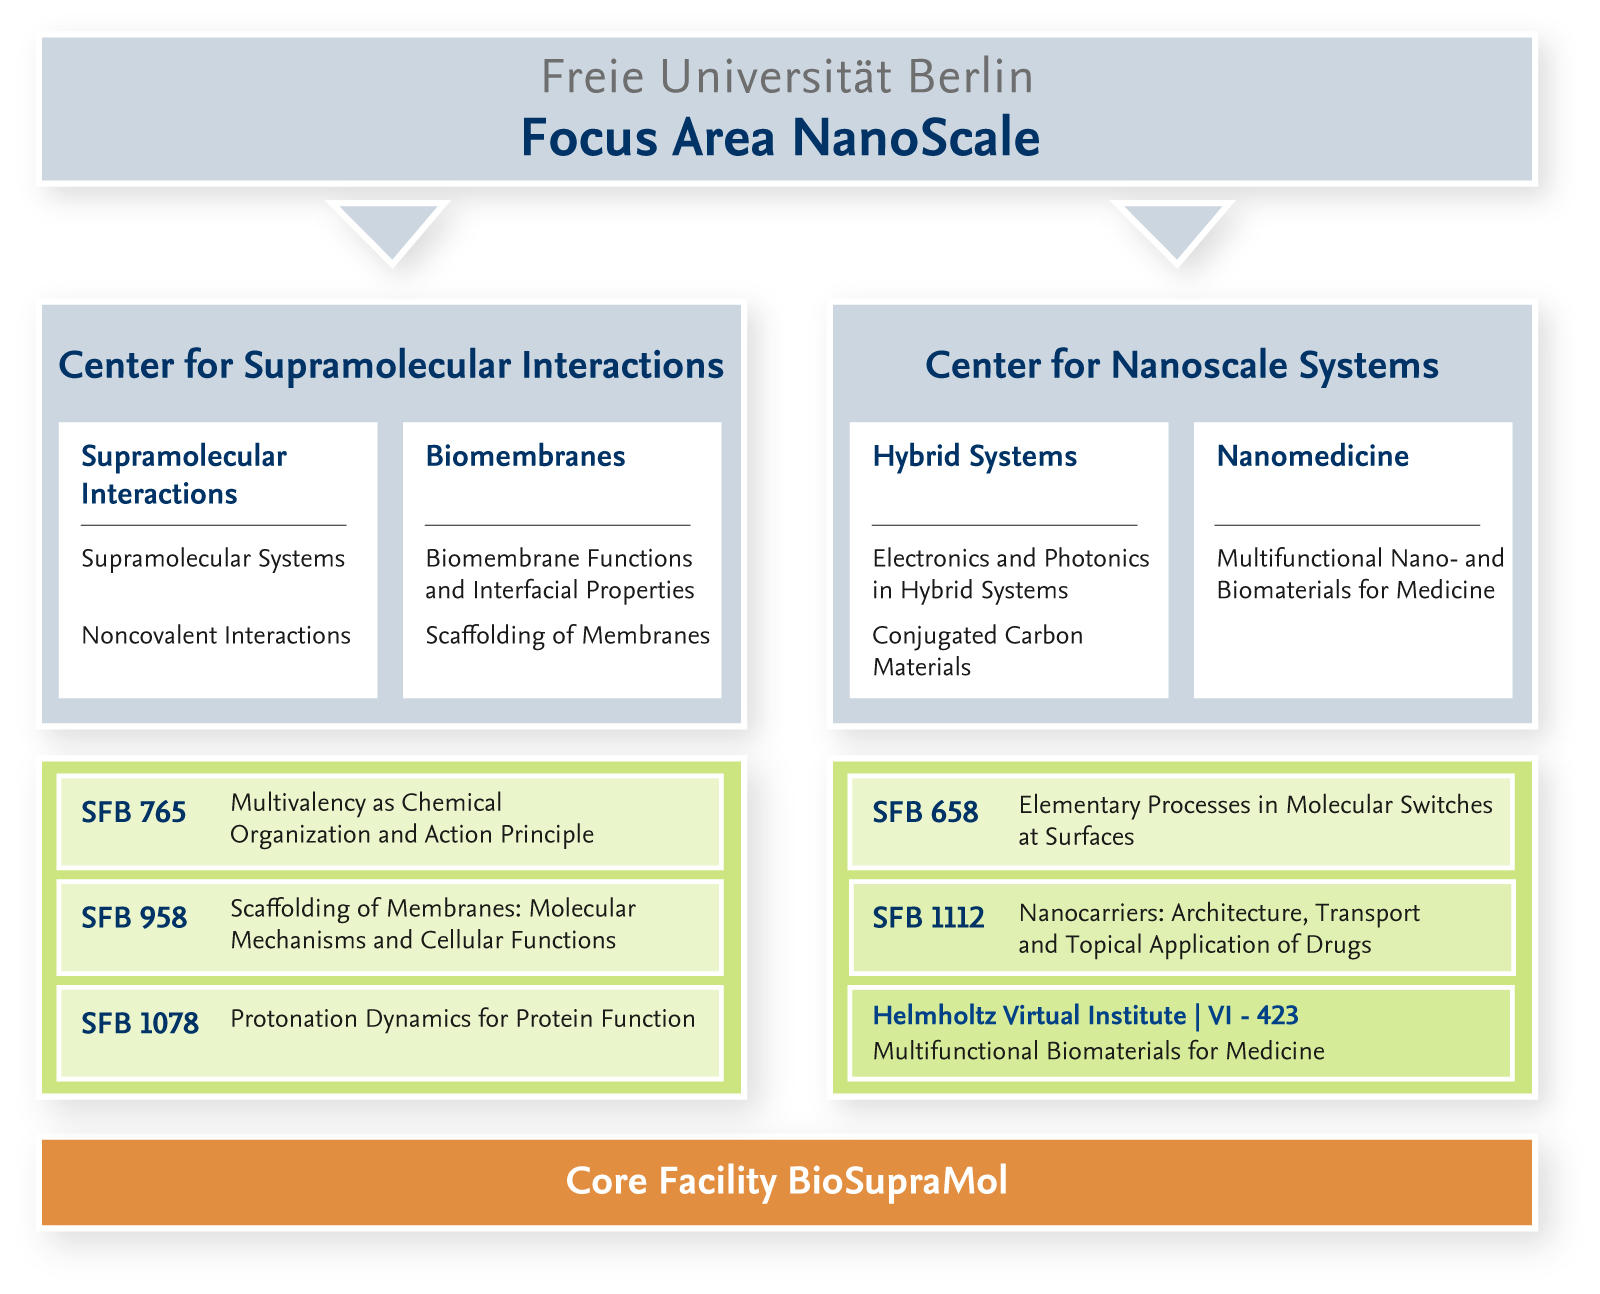 Structure of the Focus Area NanoScale